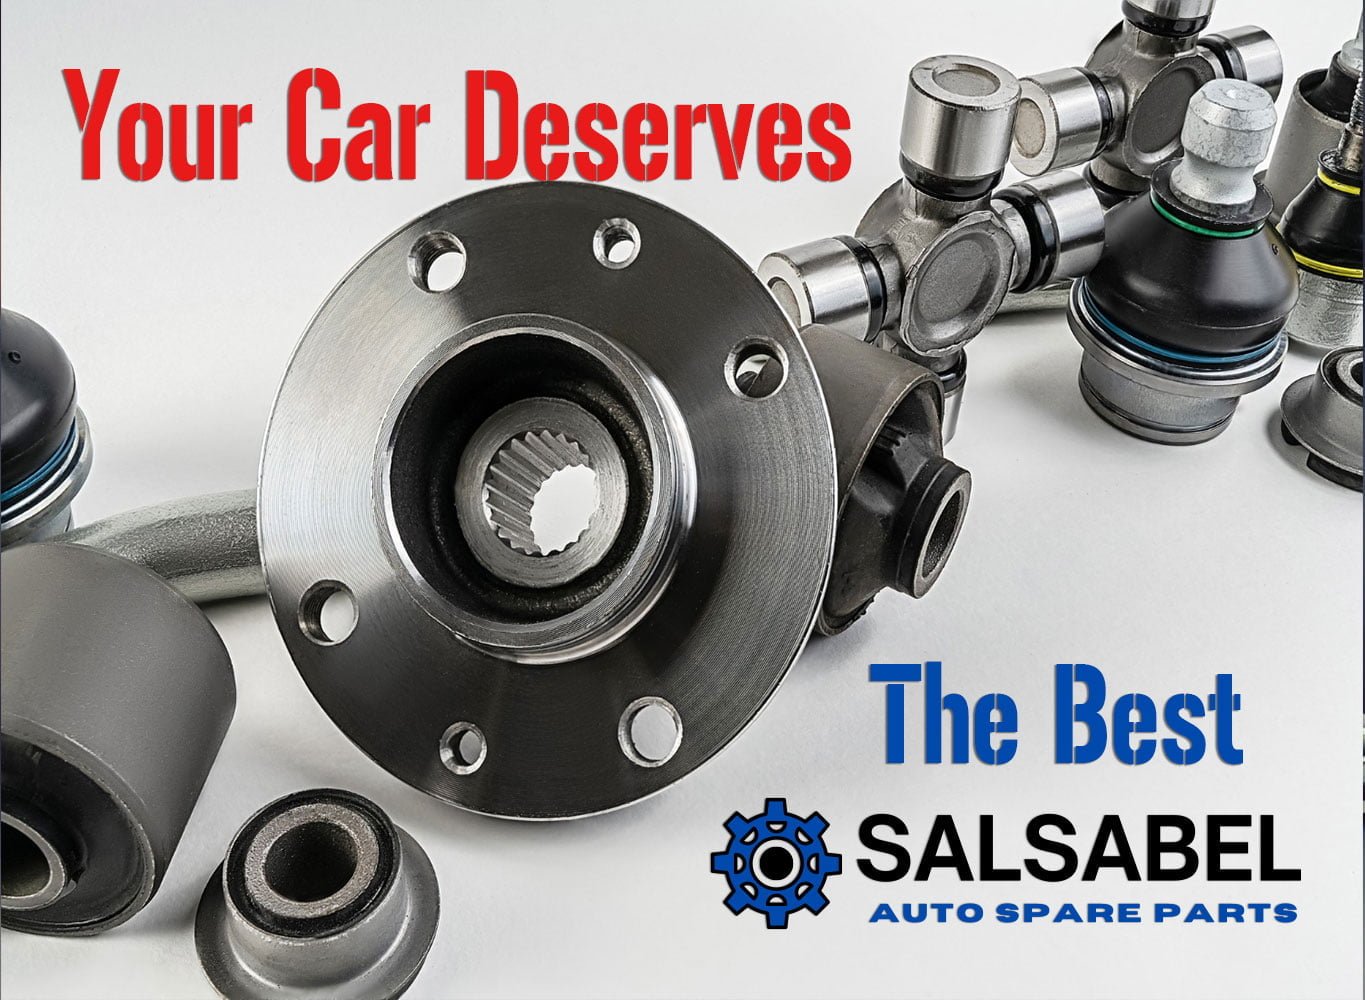 Salsabel-The-Best-Automotive-Parts-Spares-Accesoires-Uae